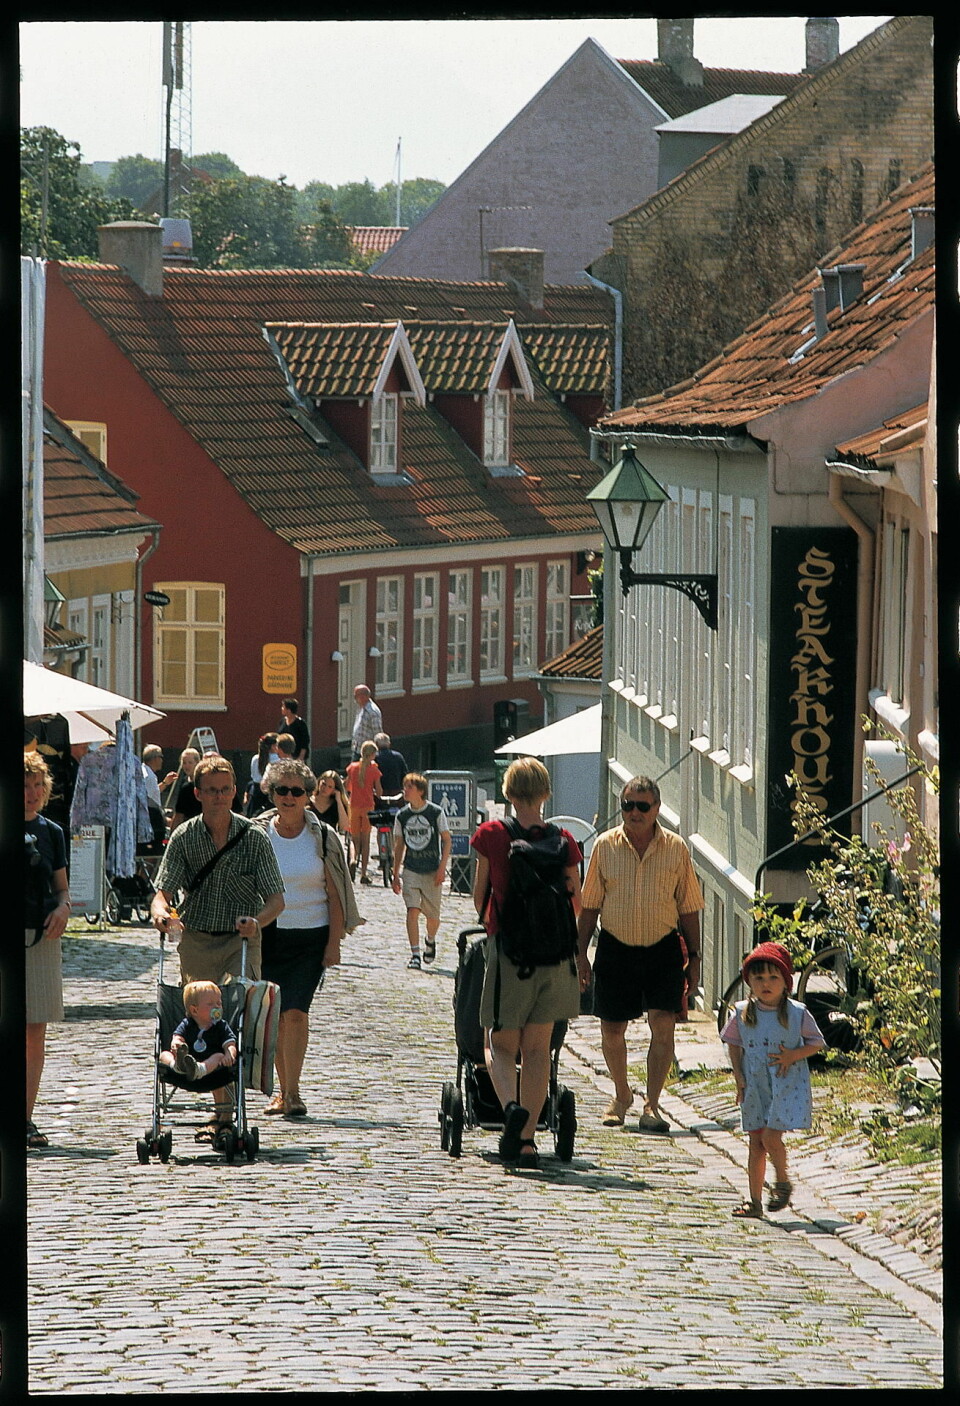 EBELTOFT: Brostein og trange gater gir byen i søndre Djursland unik sjarm. Foto: Danske turistbyreau.